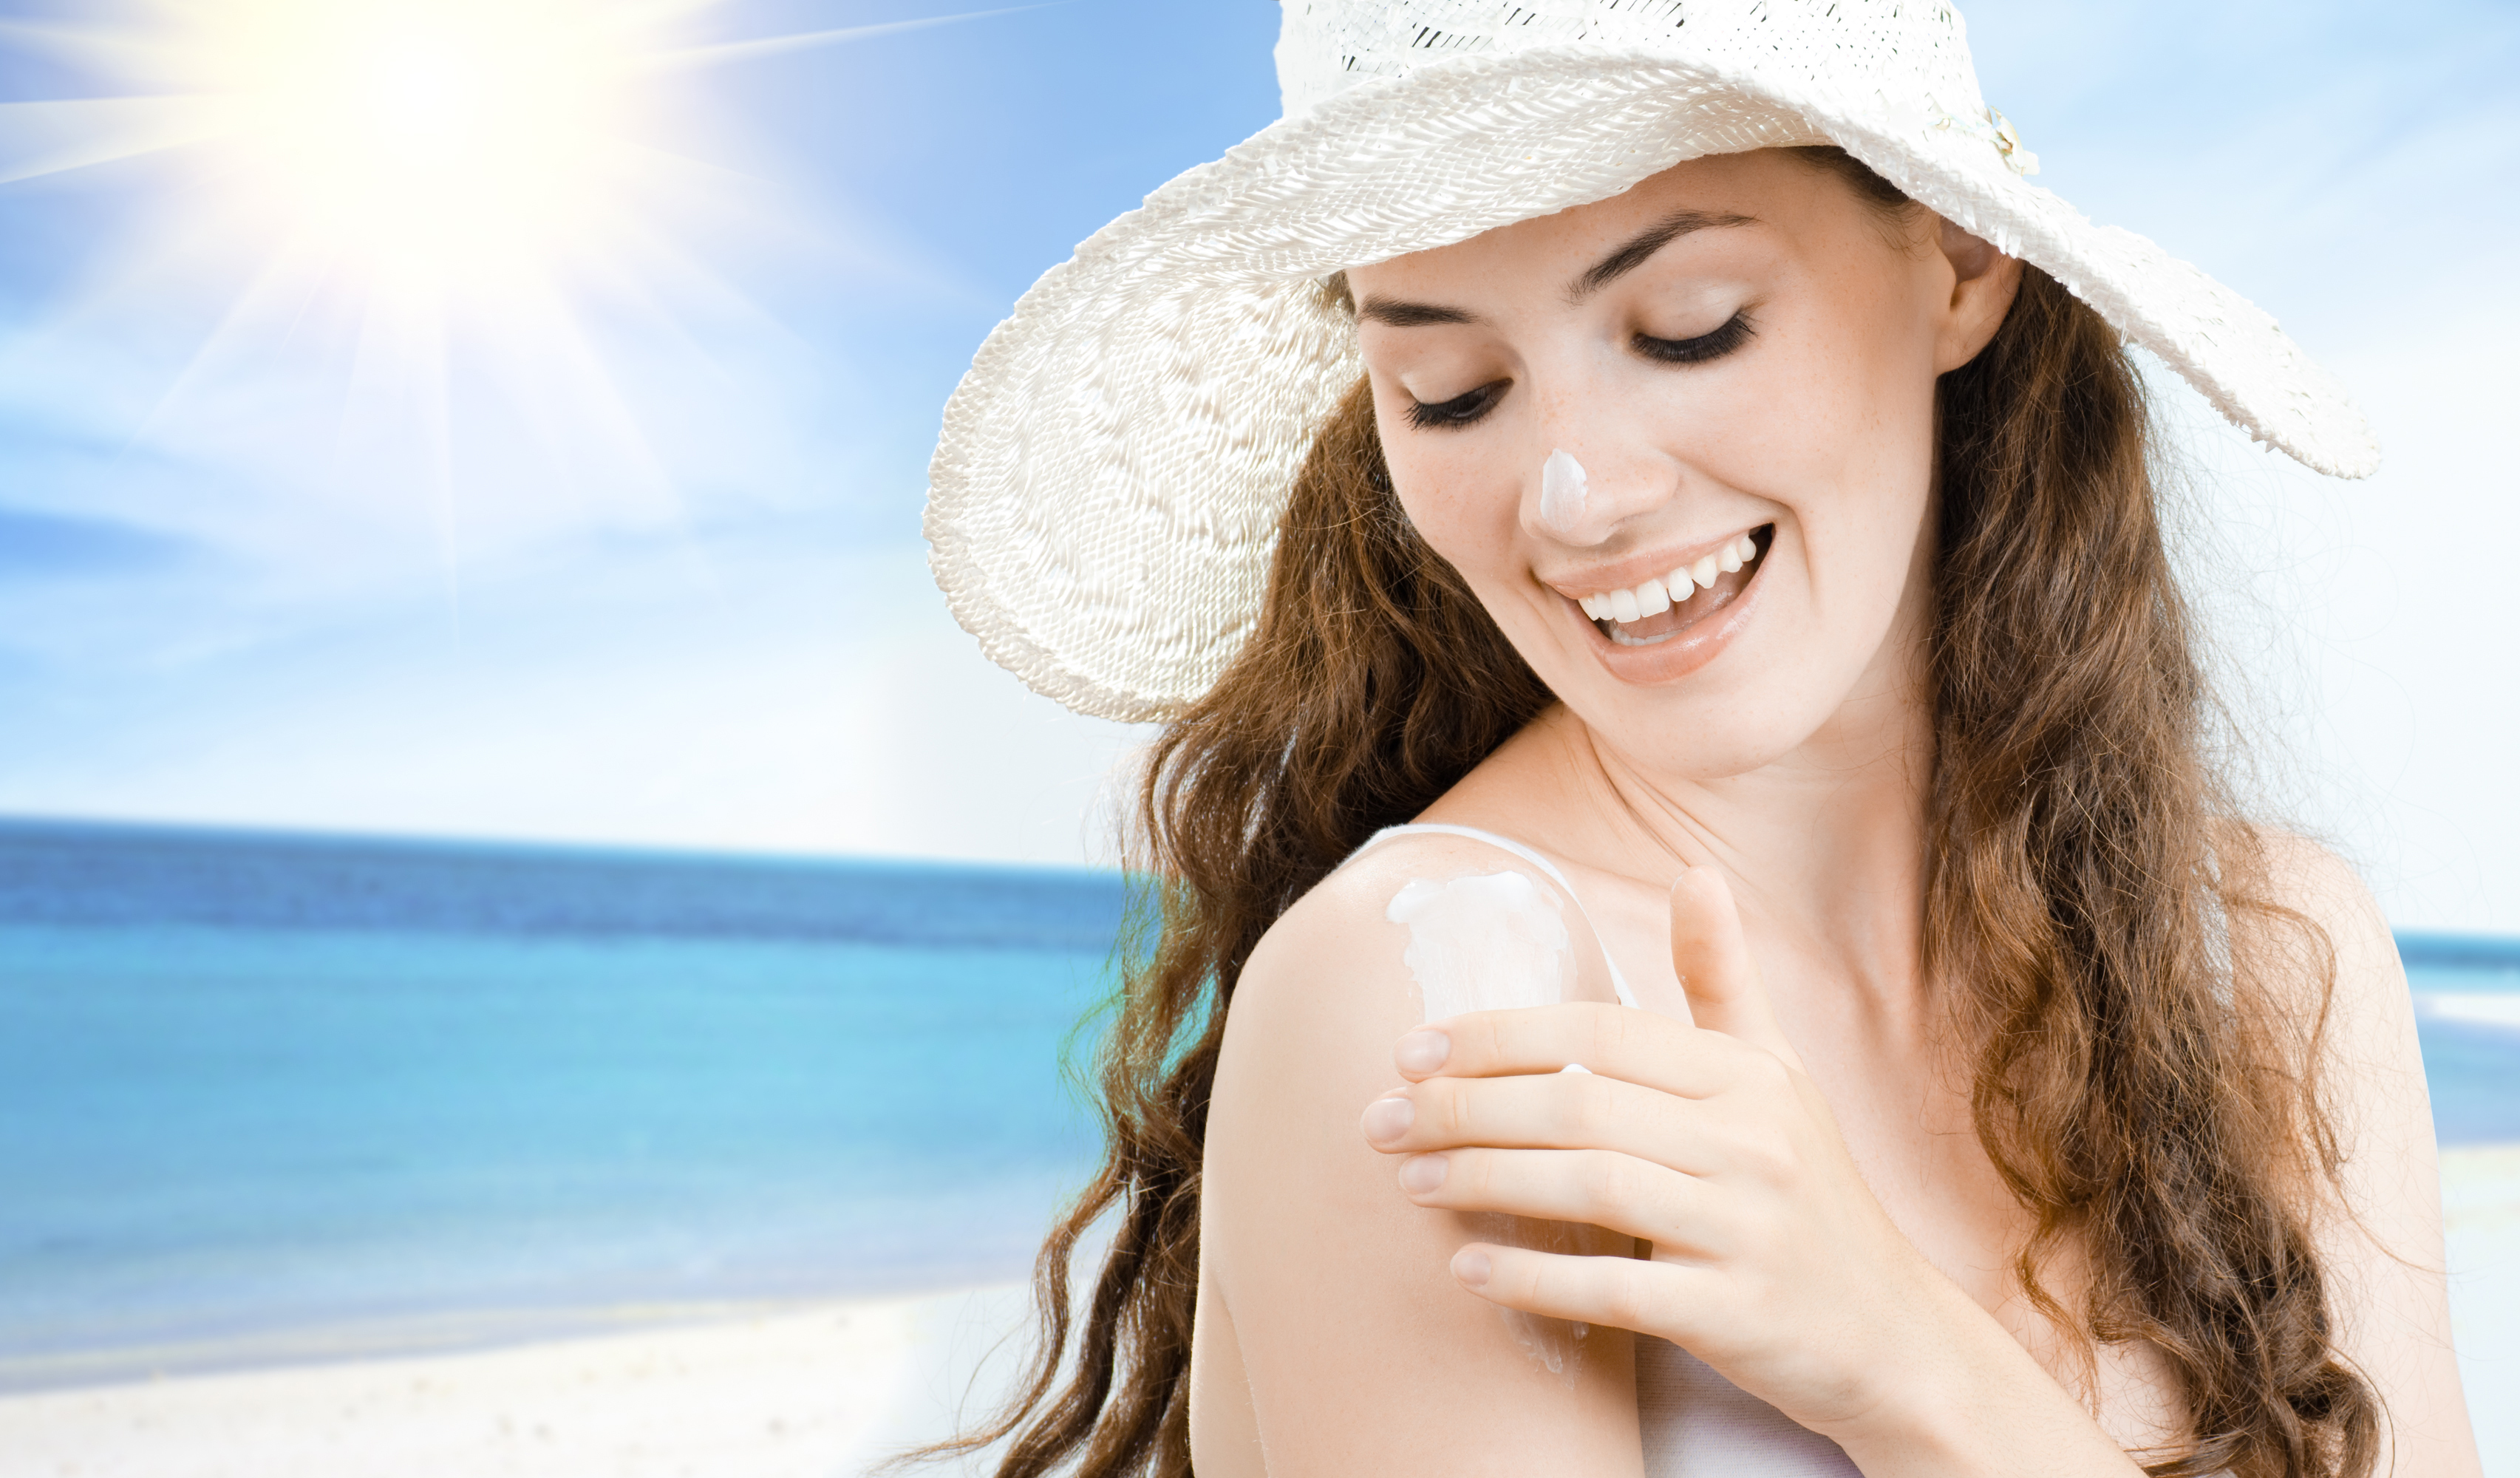   Để có làn da khỏe mạnh, bạn cần sử dụng kem chống nắng mỗi ngày  